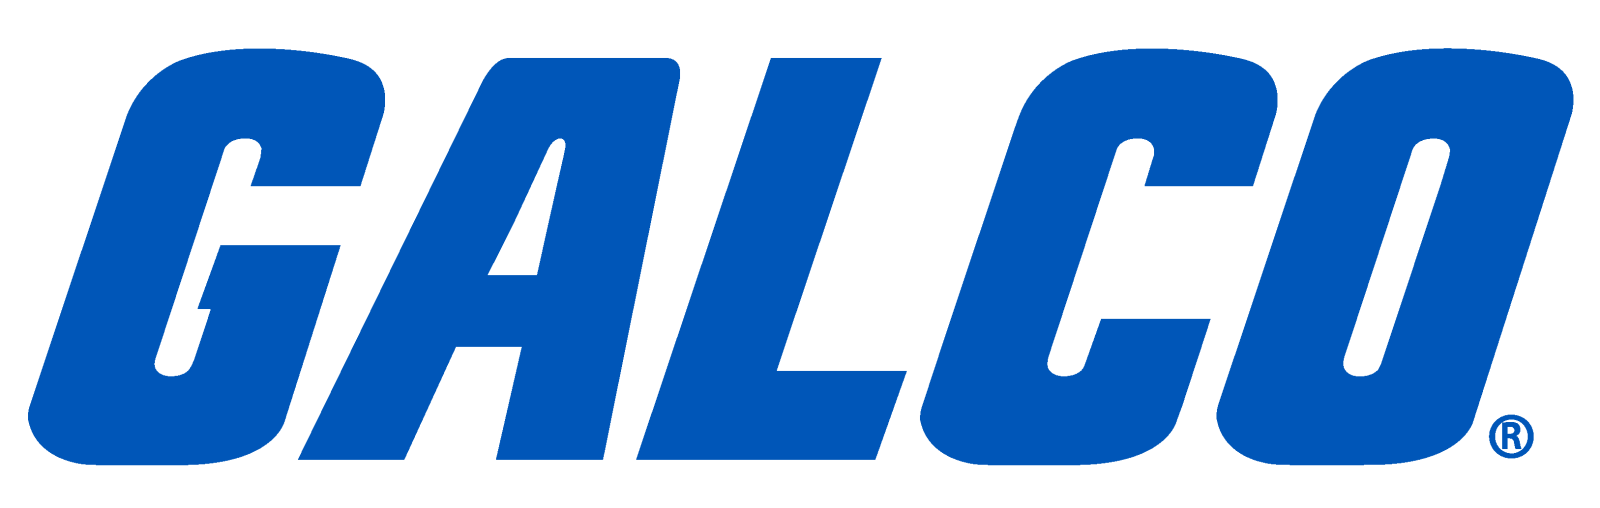 galco-logo-blue (1)